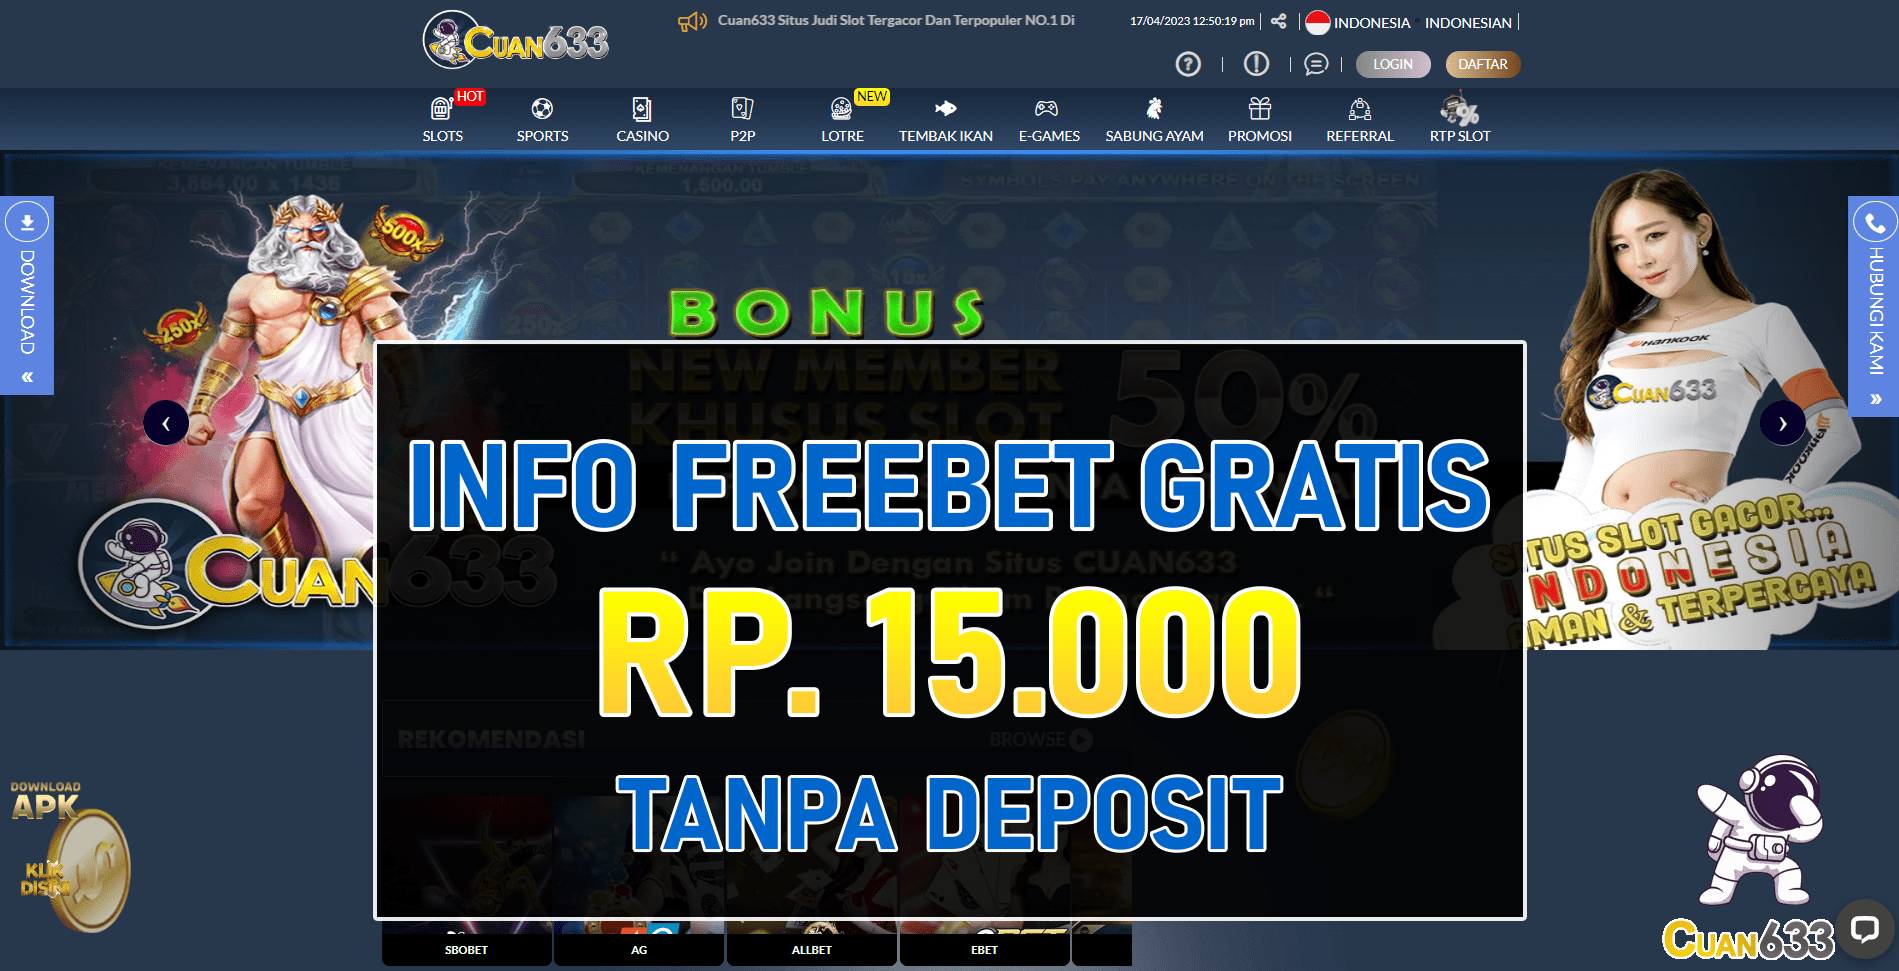 Cuan633 Freebet Gratis Tanpa Deposit